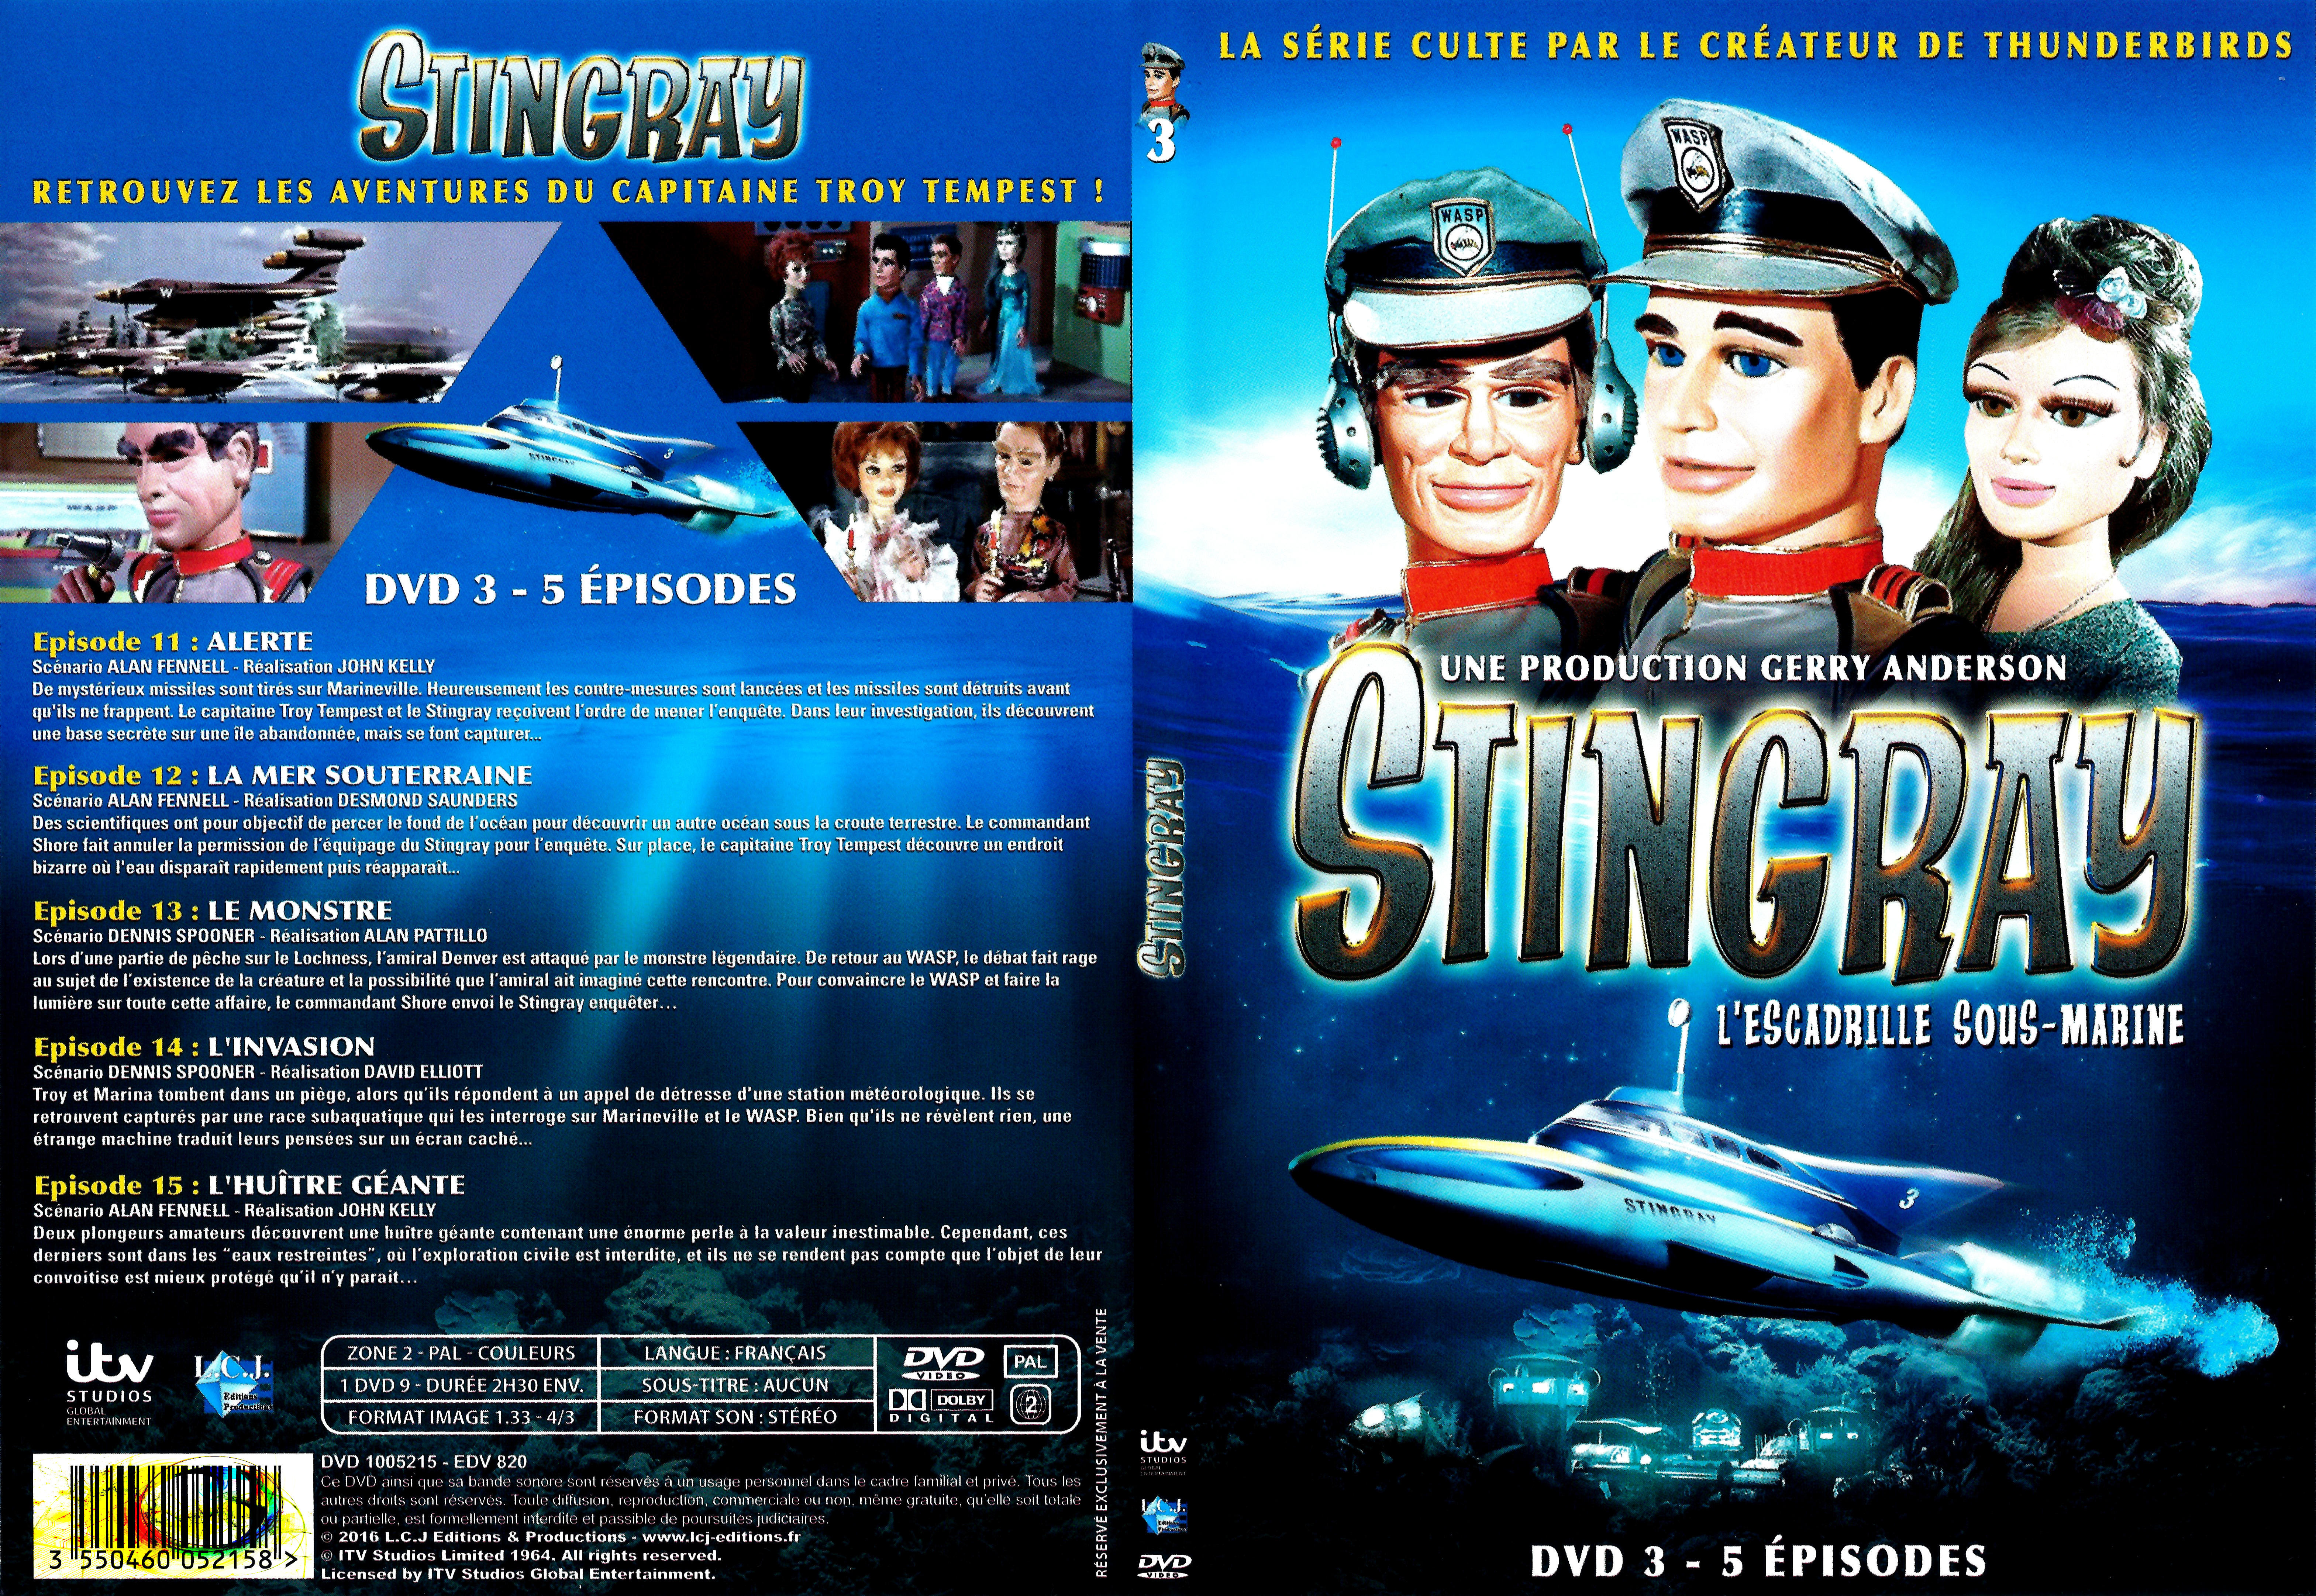 Jaquette DVD Stingray Saison 1 DVD 3